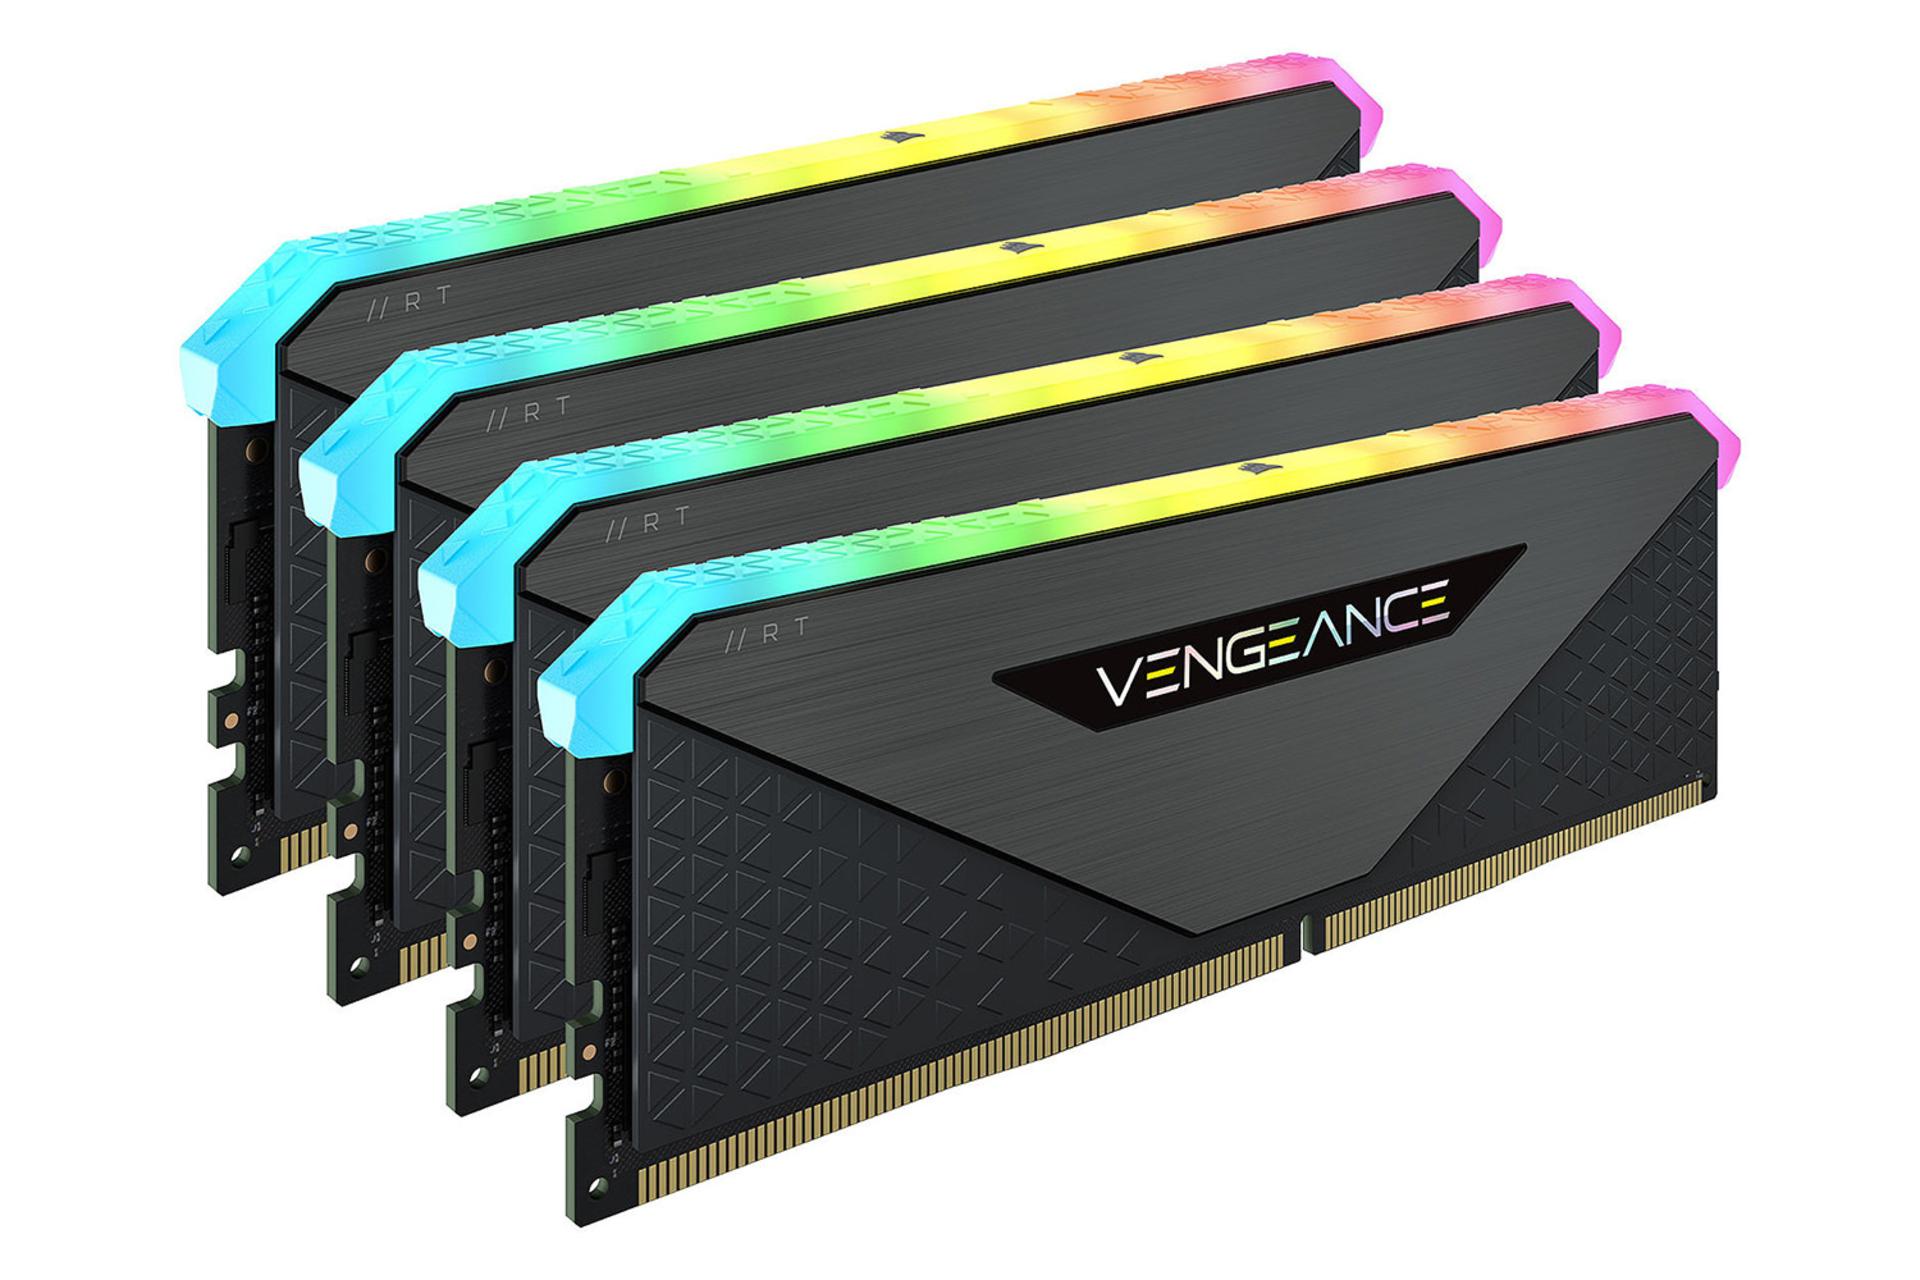 نمای جلوی رم کورسیر VENGEANCE RGB RT ظرفیت 64 گیگابایت (2x32) از نوع DDR4-3600 بصورت چهارتایی از بغل